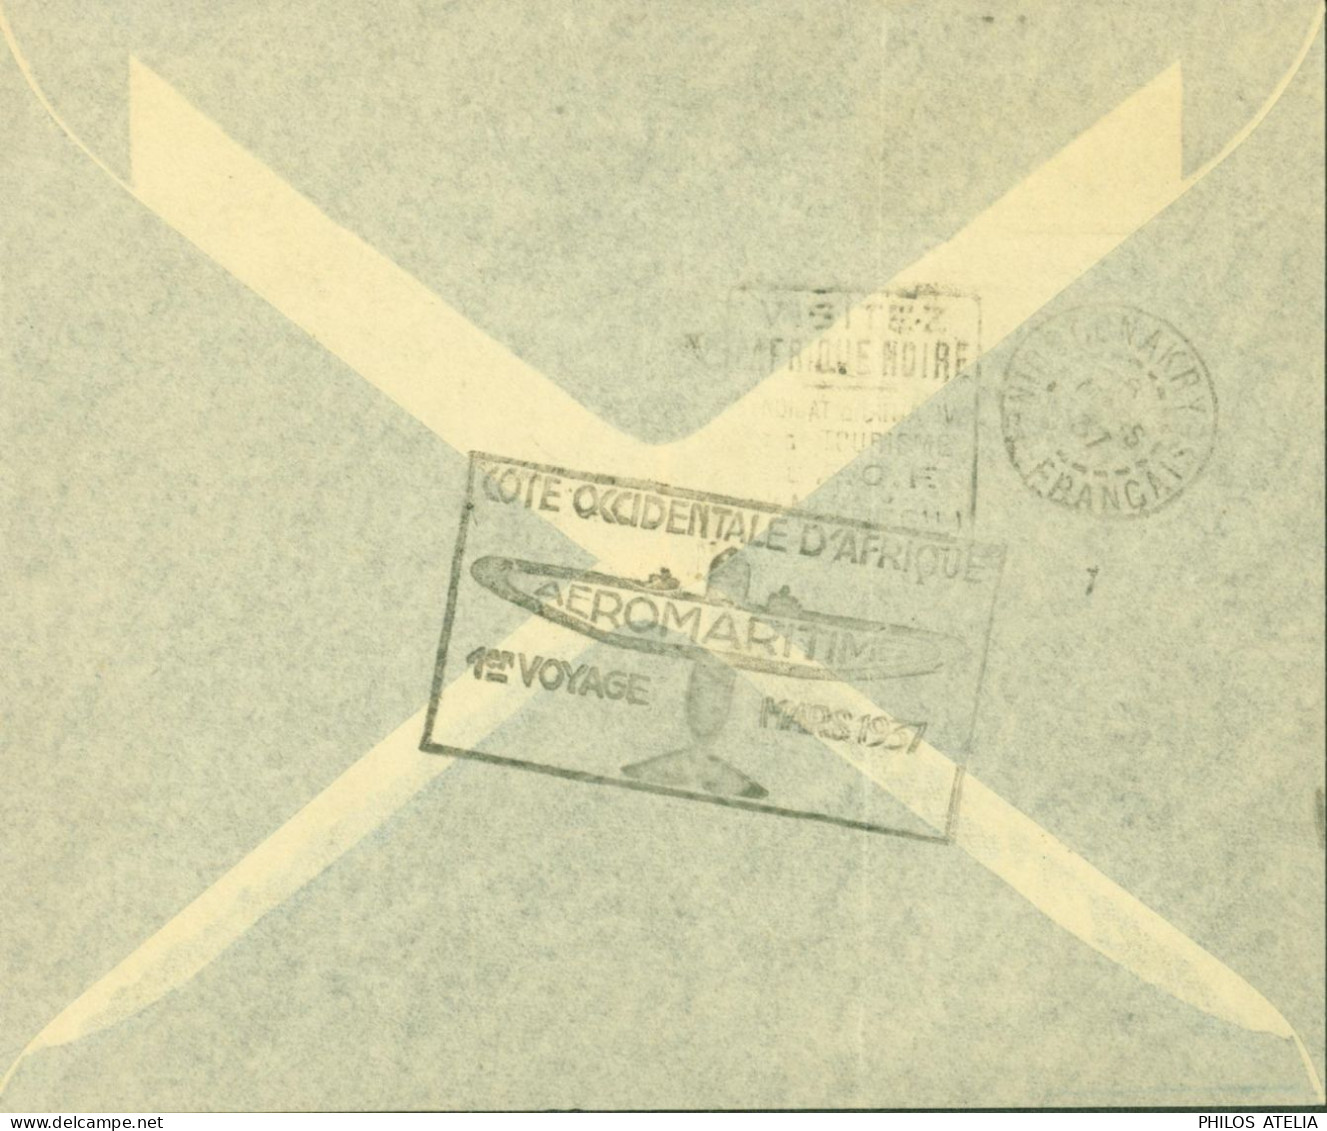 Dahomey YT N°99 101 72 Par Avion Cachet Cote Occidentale D'Afrique Aéromaritime 1er Voyage Mars 1937 CAD Cotonou 4 3 37 - Covers & Documents